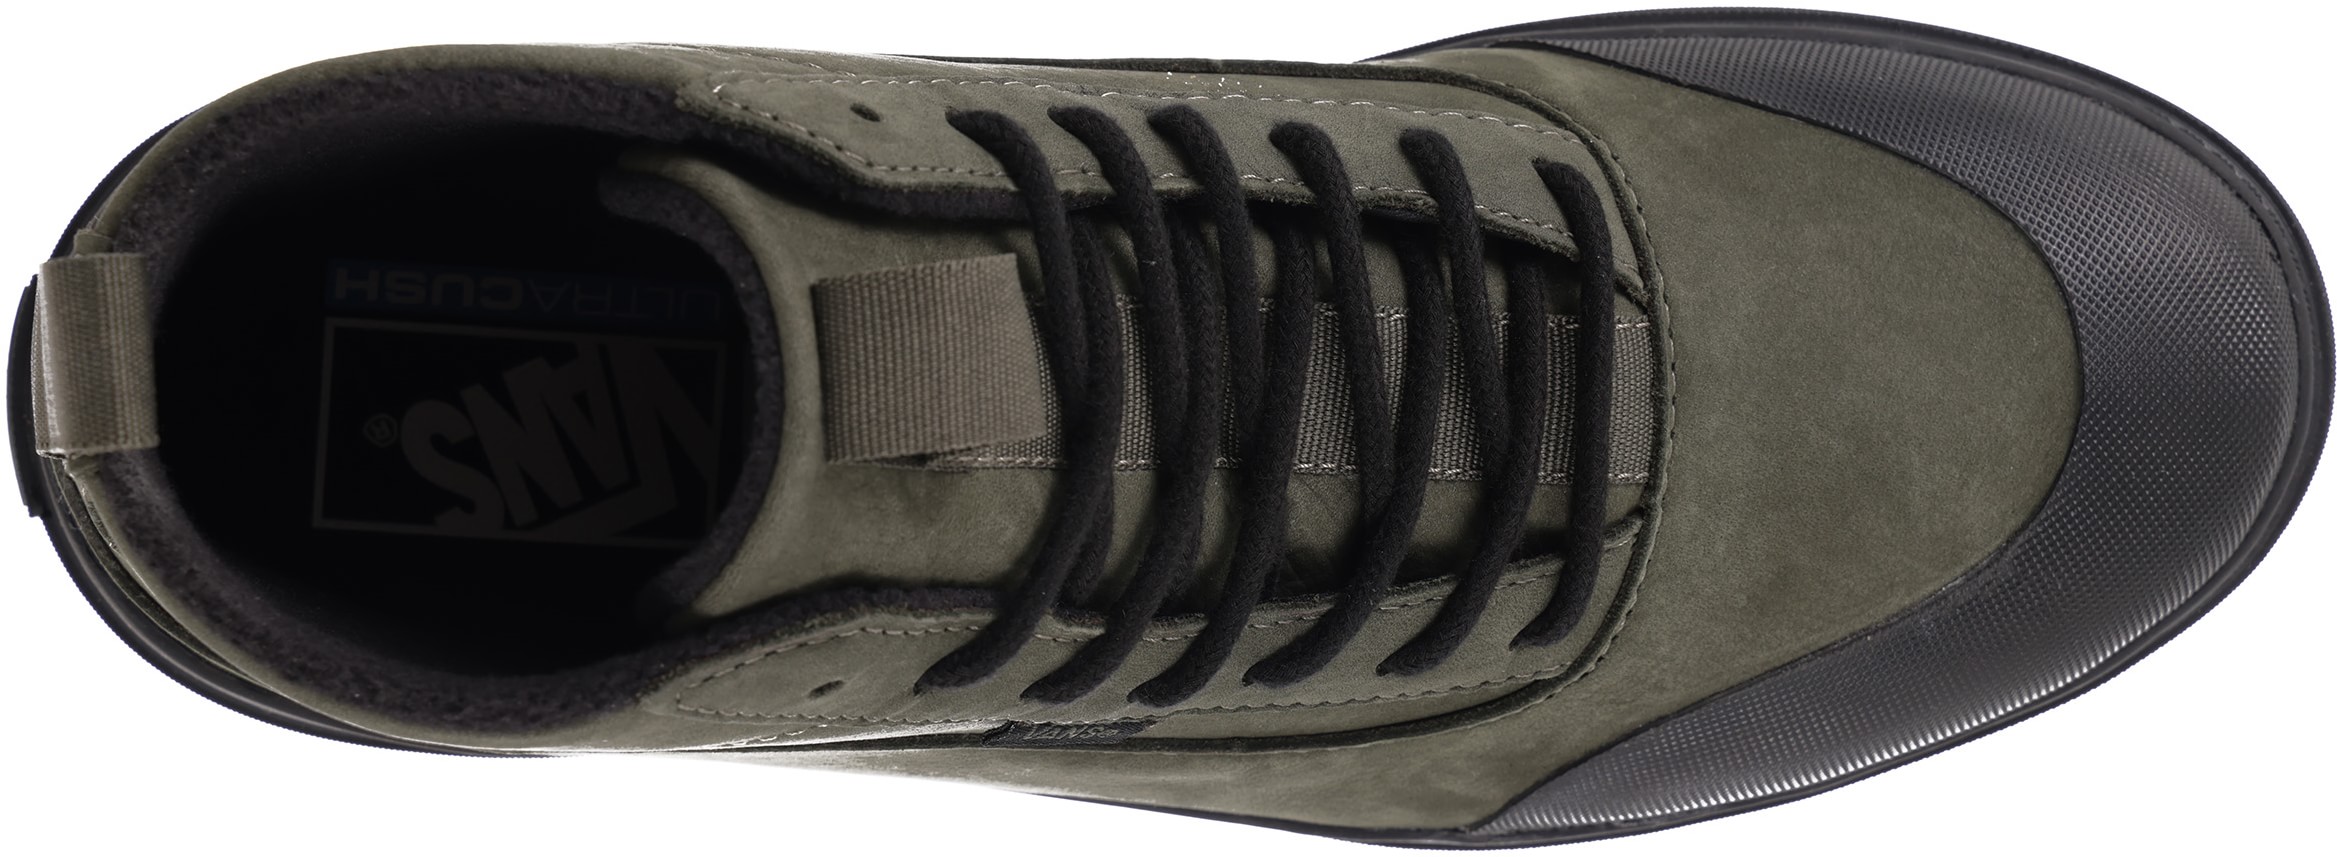 Vans Women's Colfax Boot MTE-1 Shoes - coastal military/black | Tactics